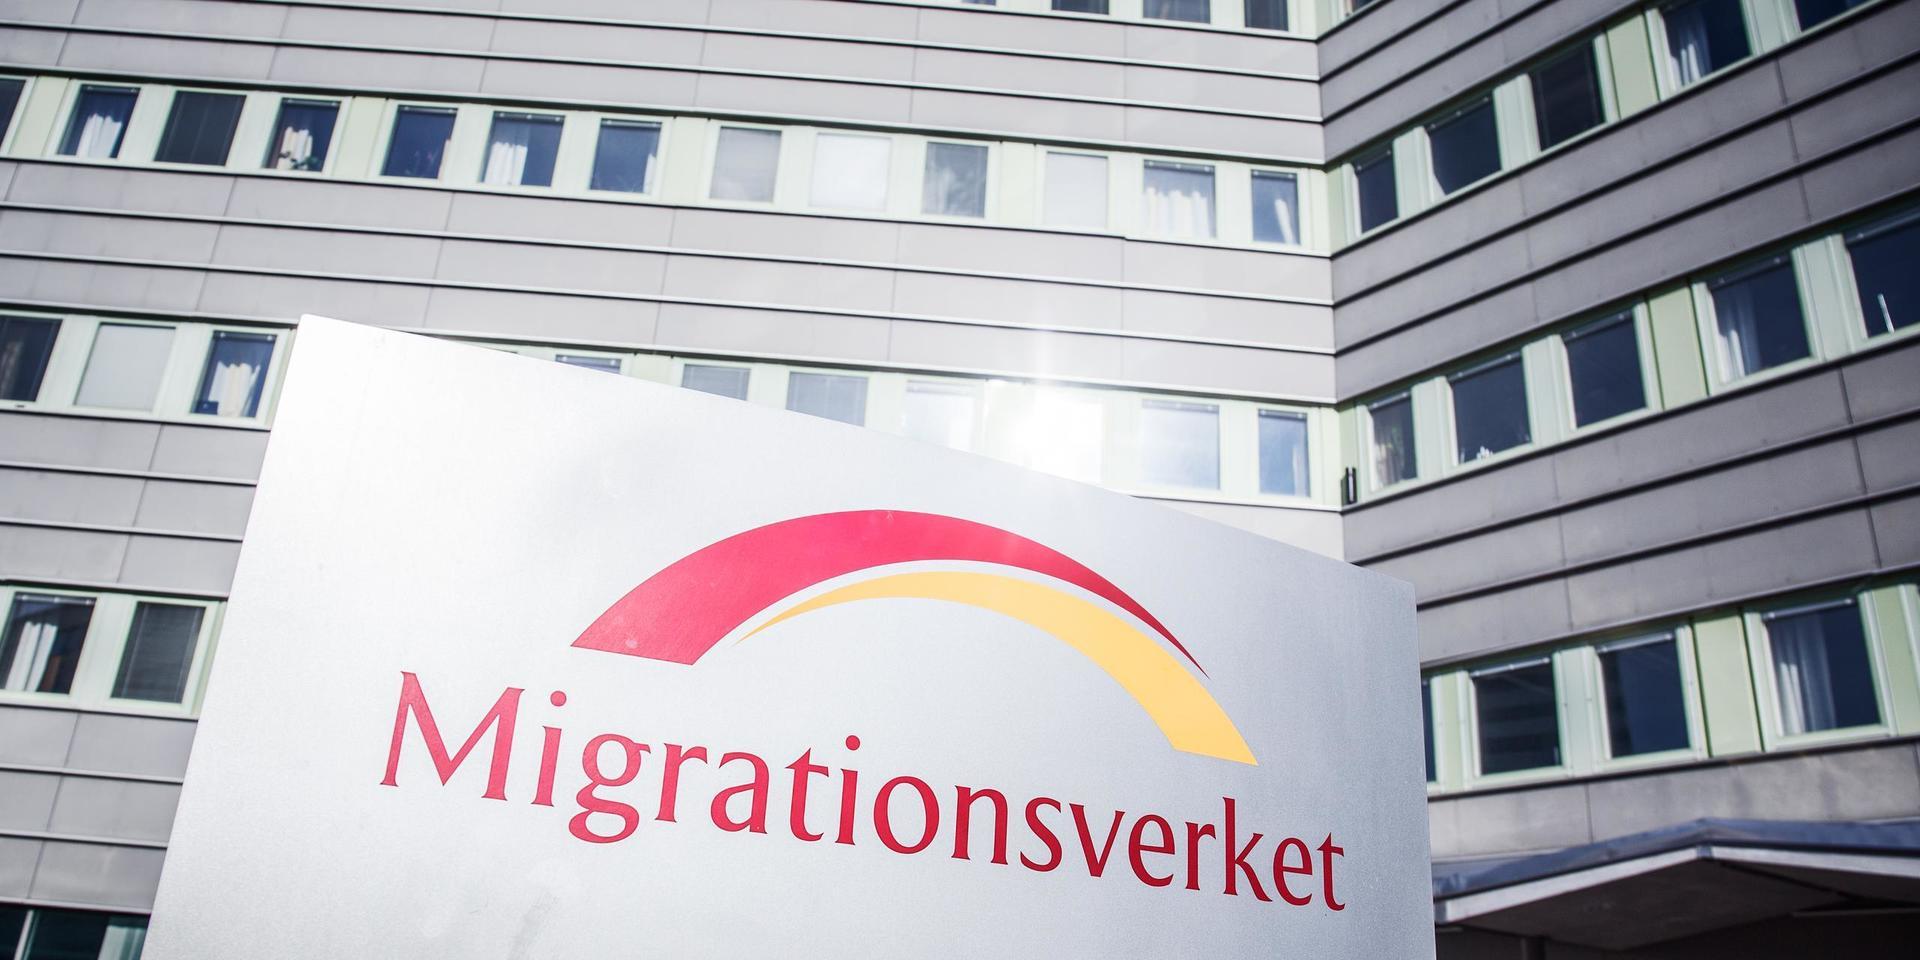 Asylprocessen har tagit upp emot tre till fyra år, och att lämna Sverige för att söka asyl i annat land har för många inte varit aktuellt eftersom de hoppats få stanna här, skriver insändaren.